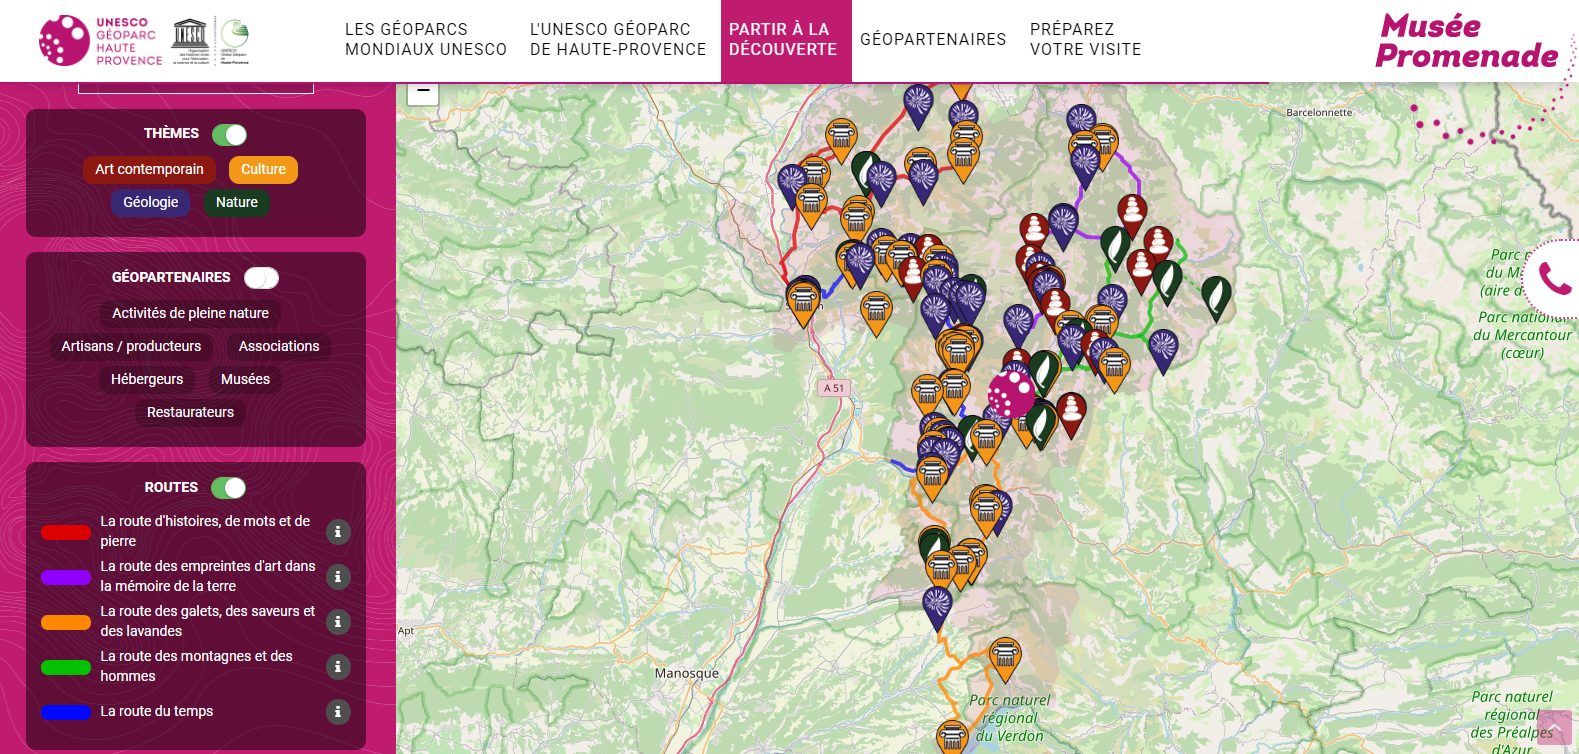 Les routes de découverte de l'UNESCO Géoparc de Haute-Provence